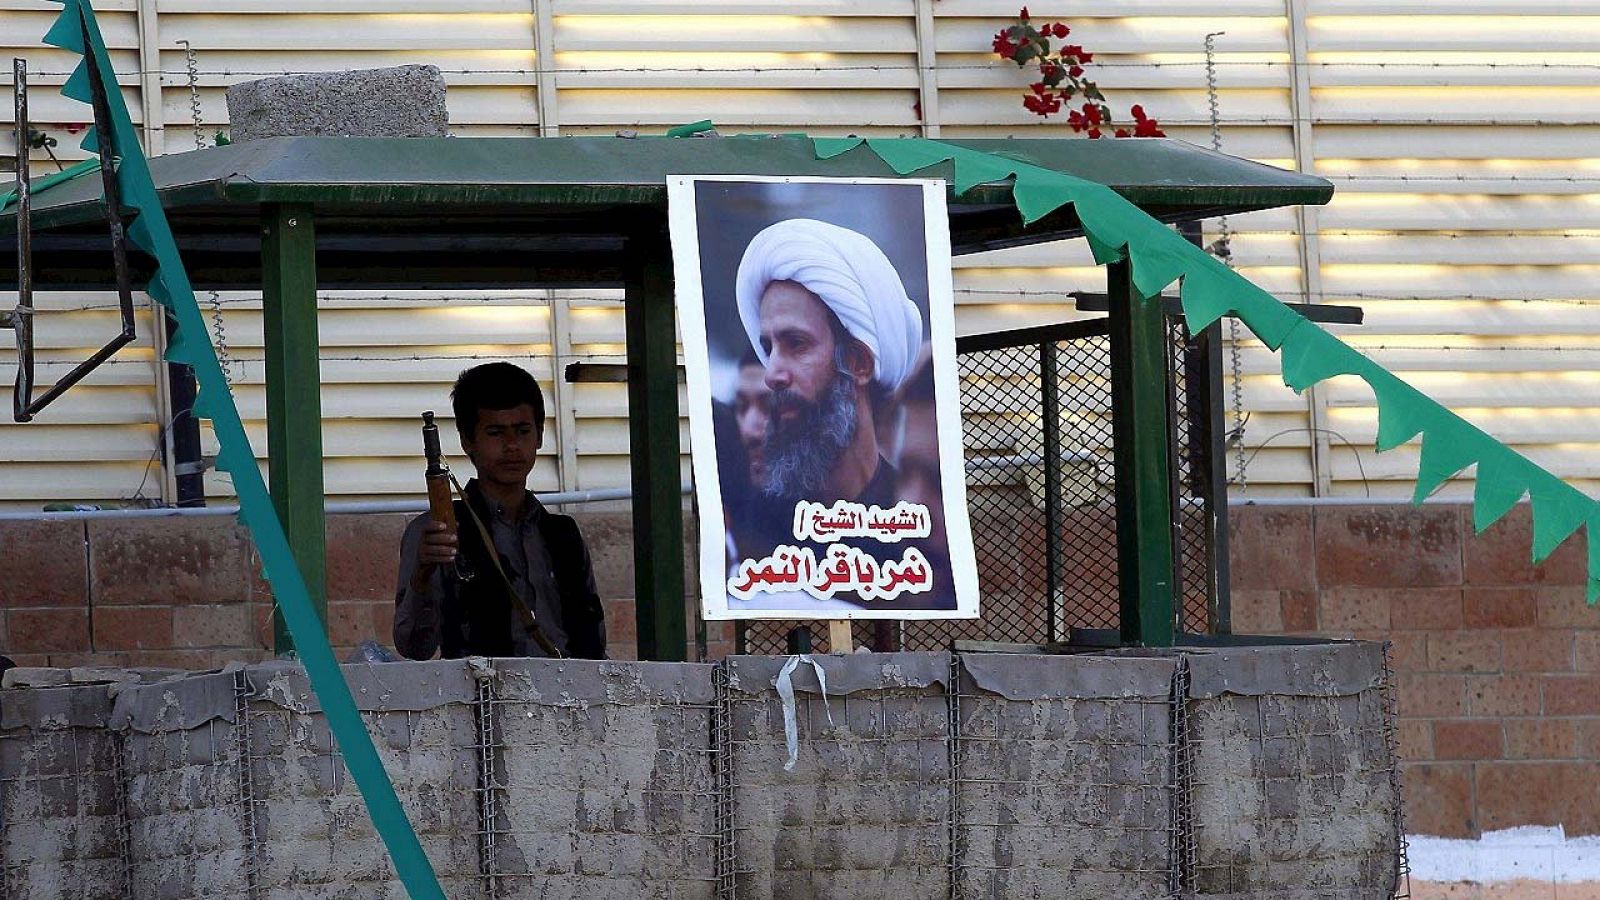 Un miembro de las fuerzas rebeldes de los hutíes hace guardia junto un poster del fallecido clérigo chií Nimr al-Nimr durante una manifestación contra Arabia Saudí organizada frente a la embajada saudita en Saná (Yemen), el 7 de enero de 2016